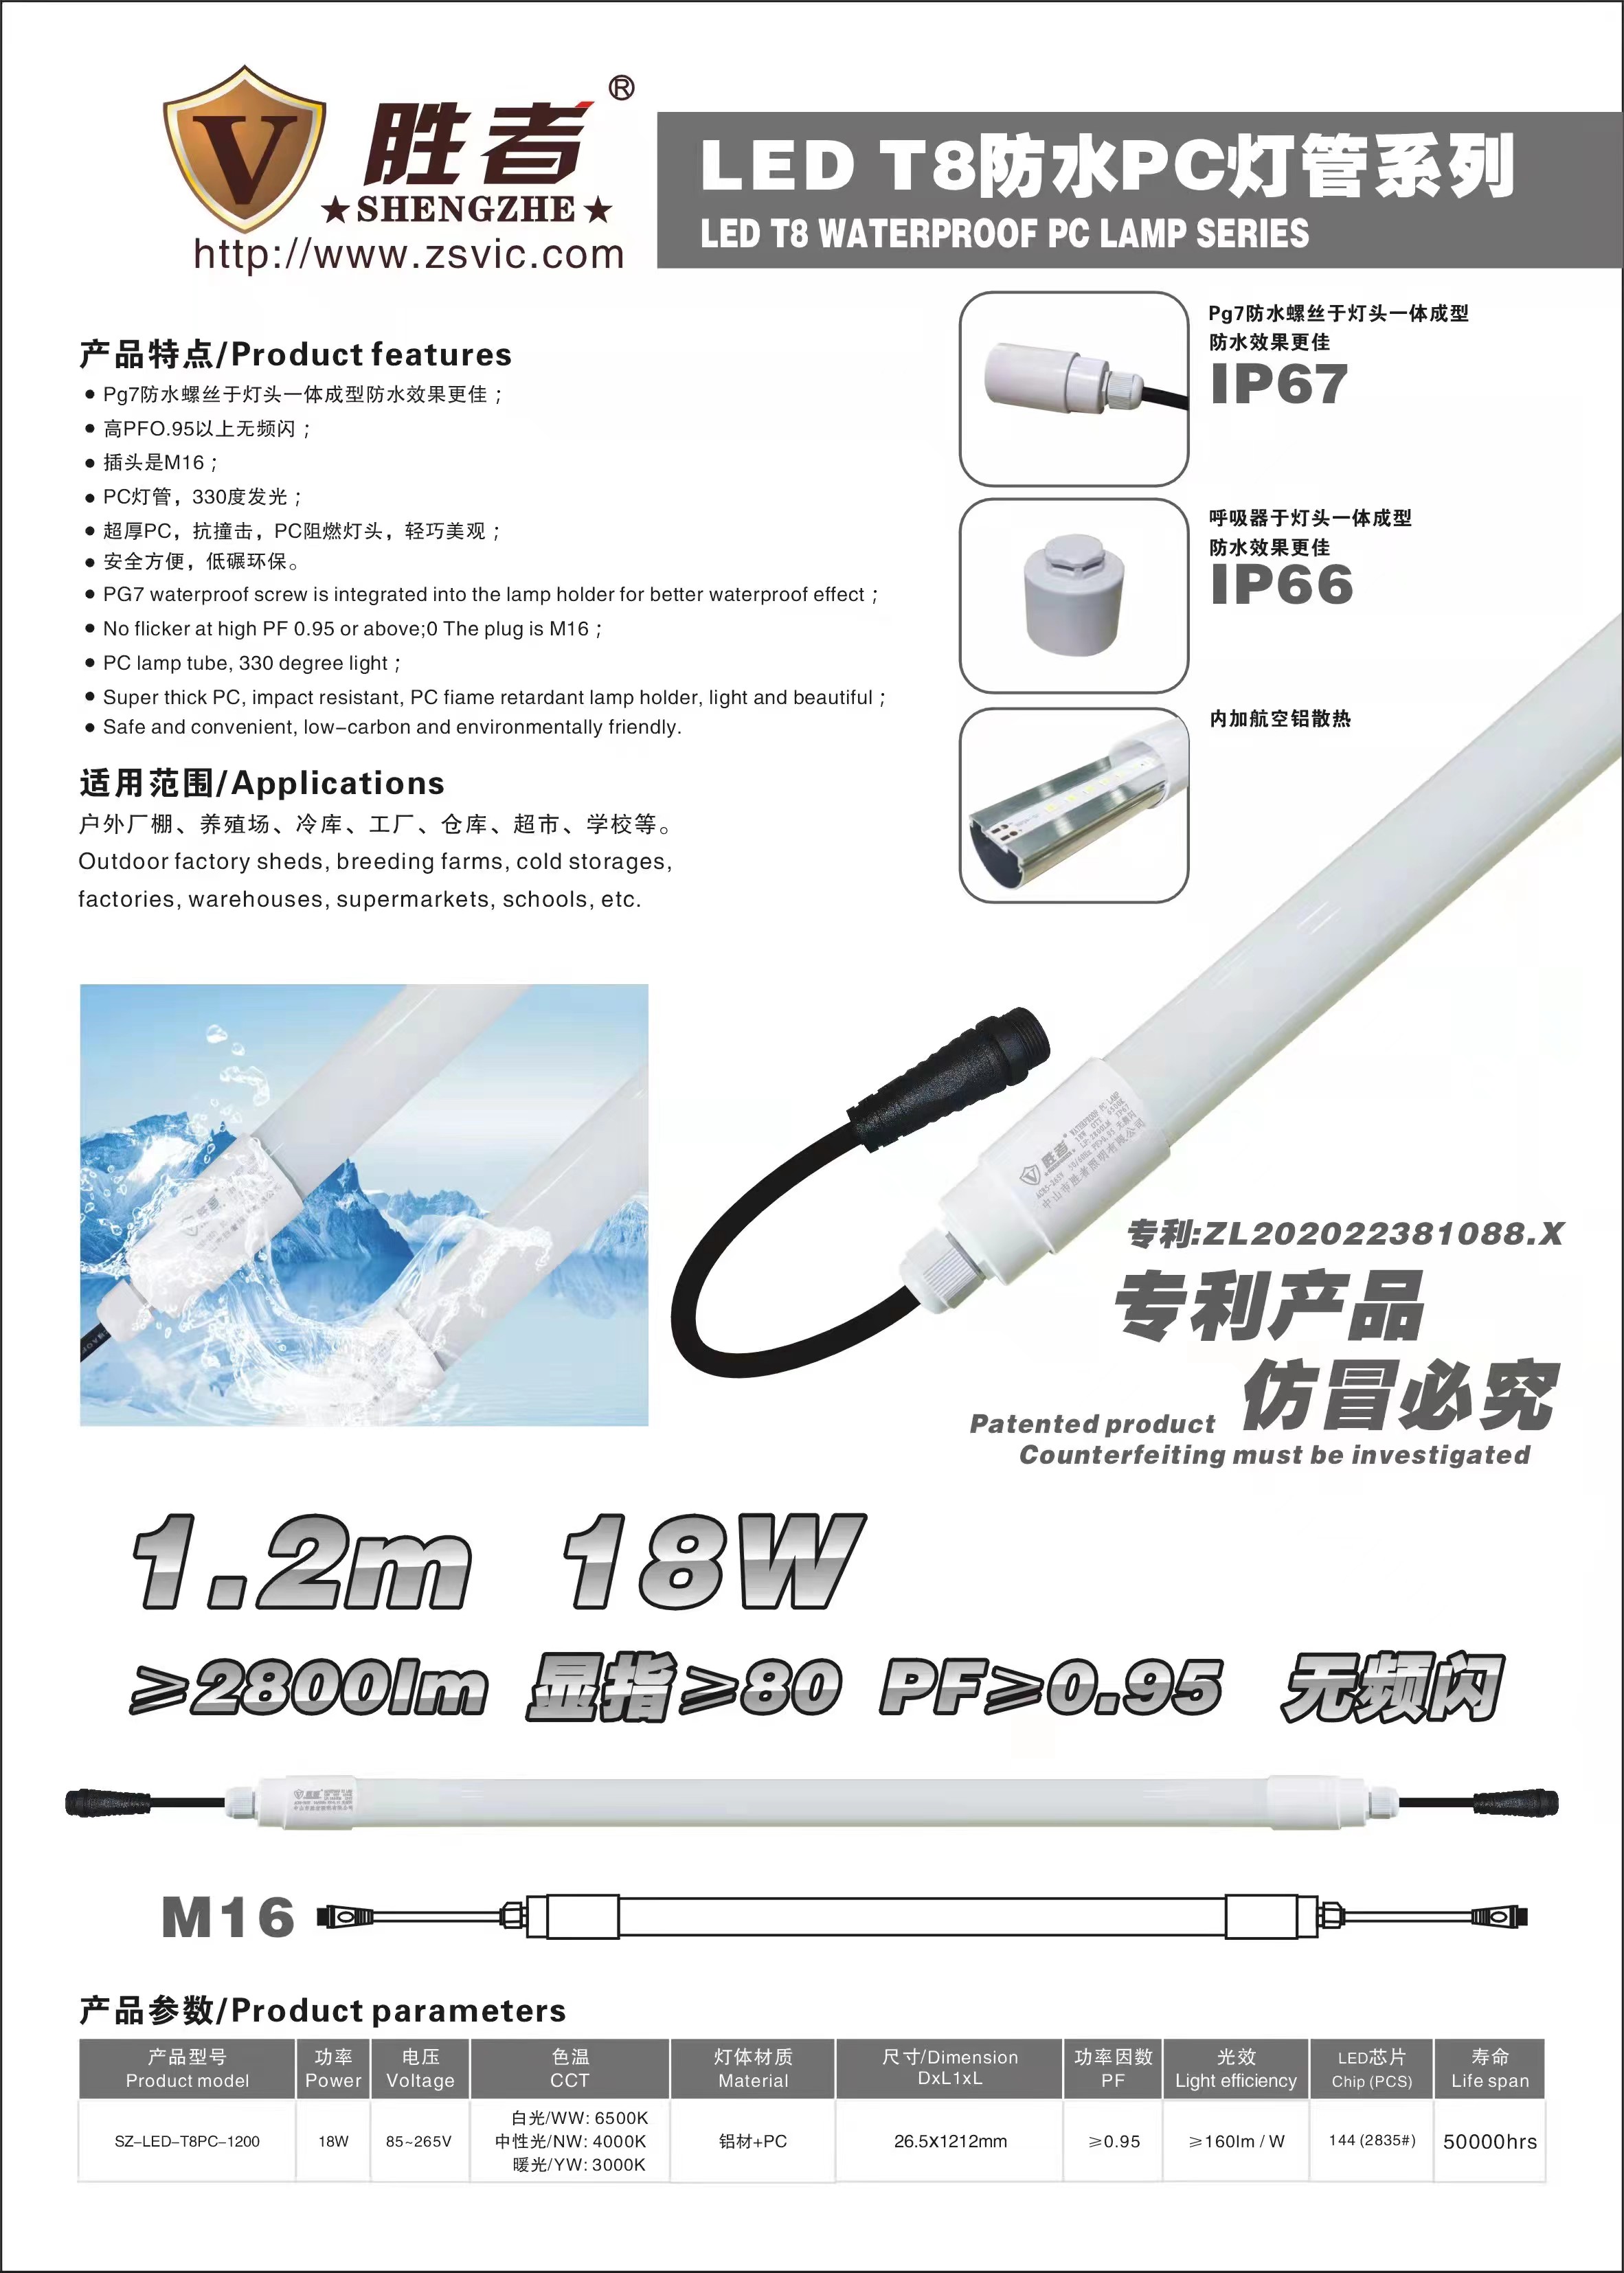 9 5000 LEDT8 waterproof lamp tube